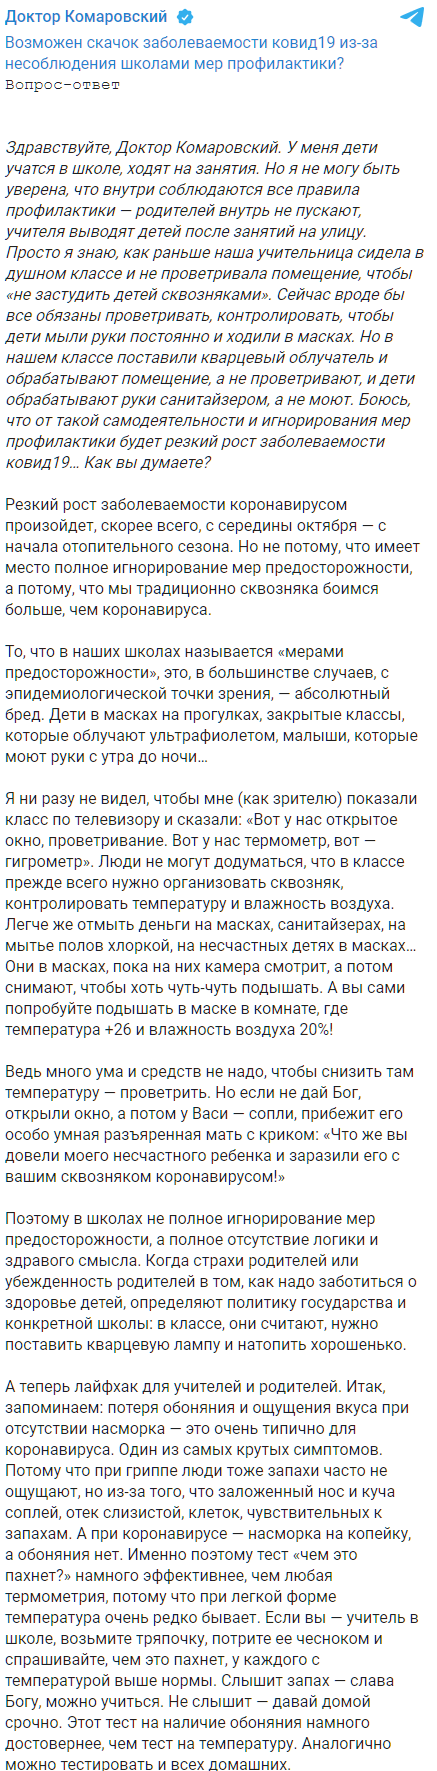 Доктор Комаровский рассказал, когда ждать нового скачка коронавируса в Украине. Скриншот: Telegram/Доктор Комаровский